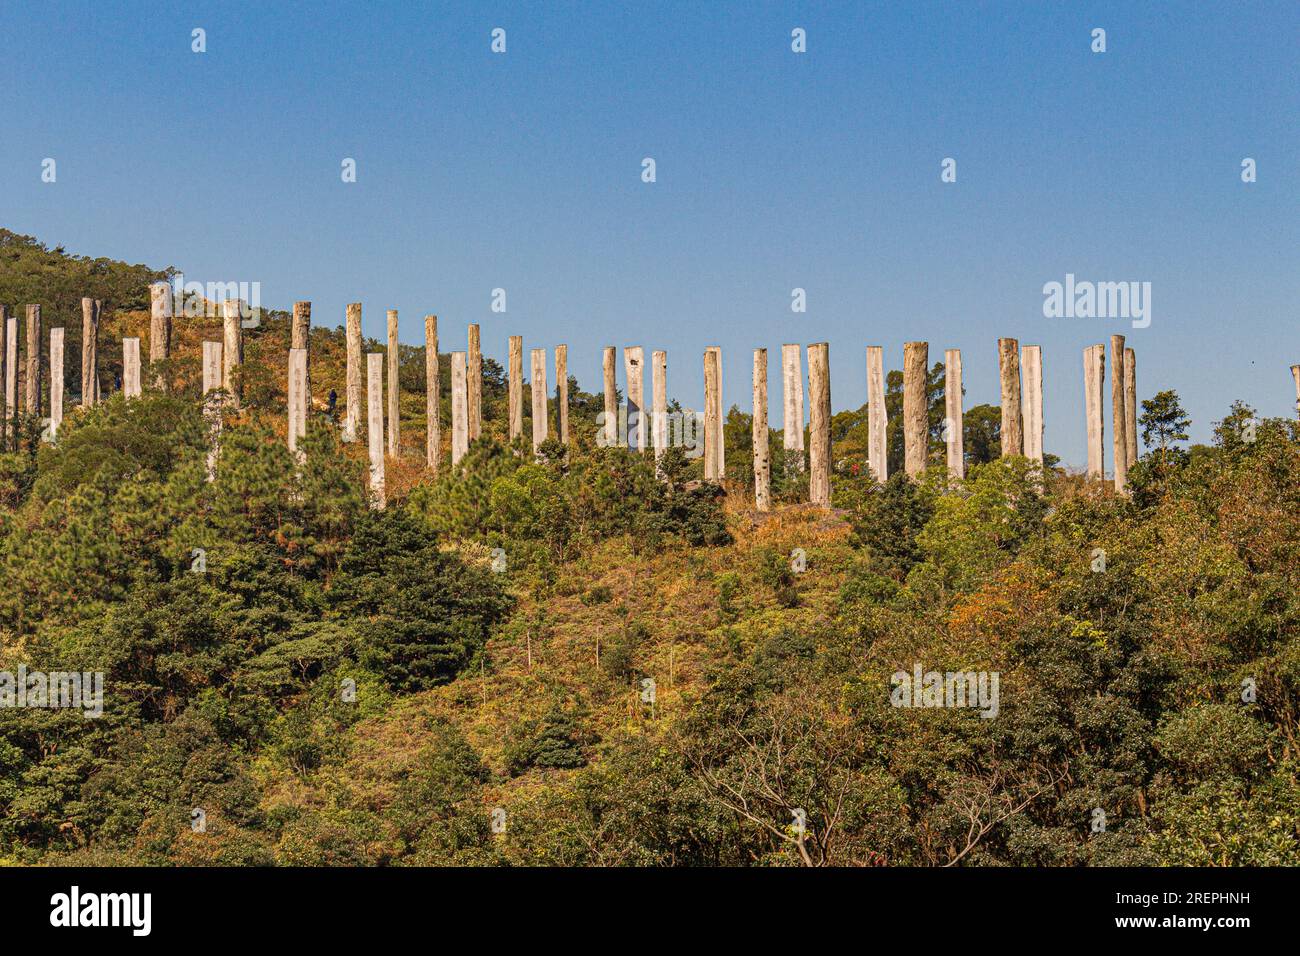 Le chemin de la sagesse, avec ses 38 obélisques en bois, de 10 mètres de haut, se trouve sur l'île de Lantau, Hong Kong, Chine et est en un chiffre de 8 pour représenter l'infini Banque D'Images